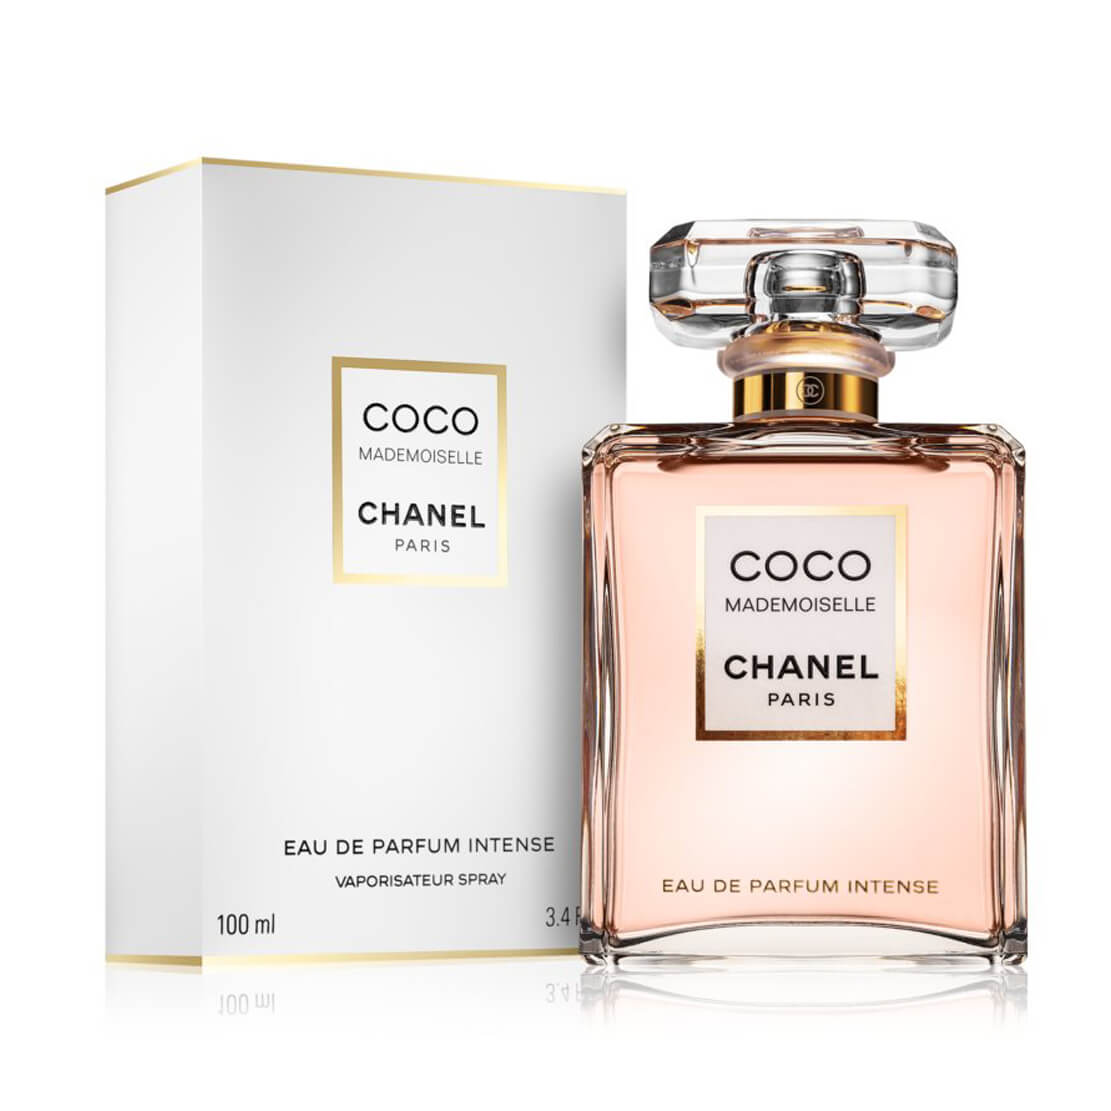 CHANEL · Coco Mademoiselle Eau de Parfum Intense